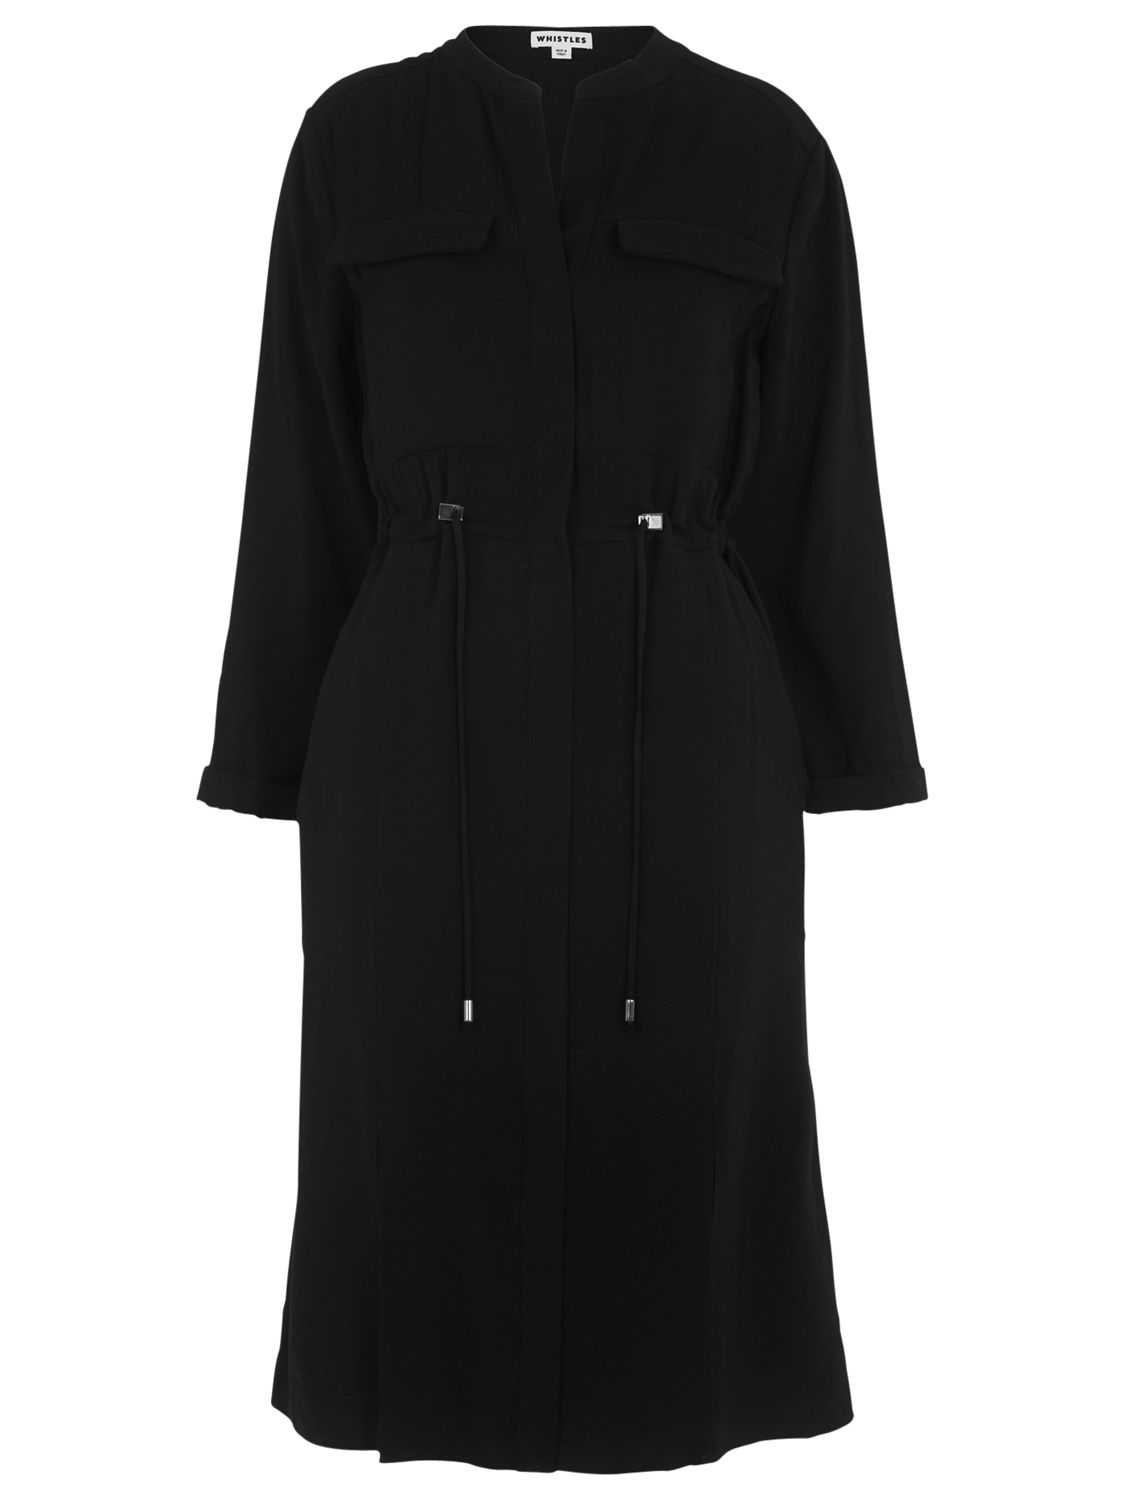 Whistles Salwa Shirt Dress, Black at John Lewis & Partners